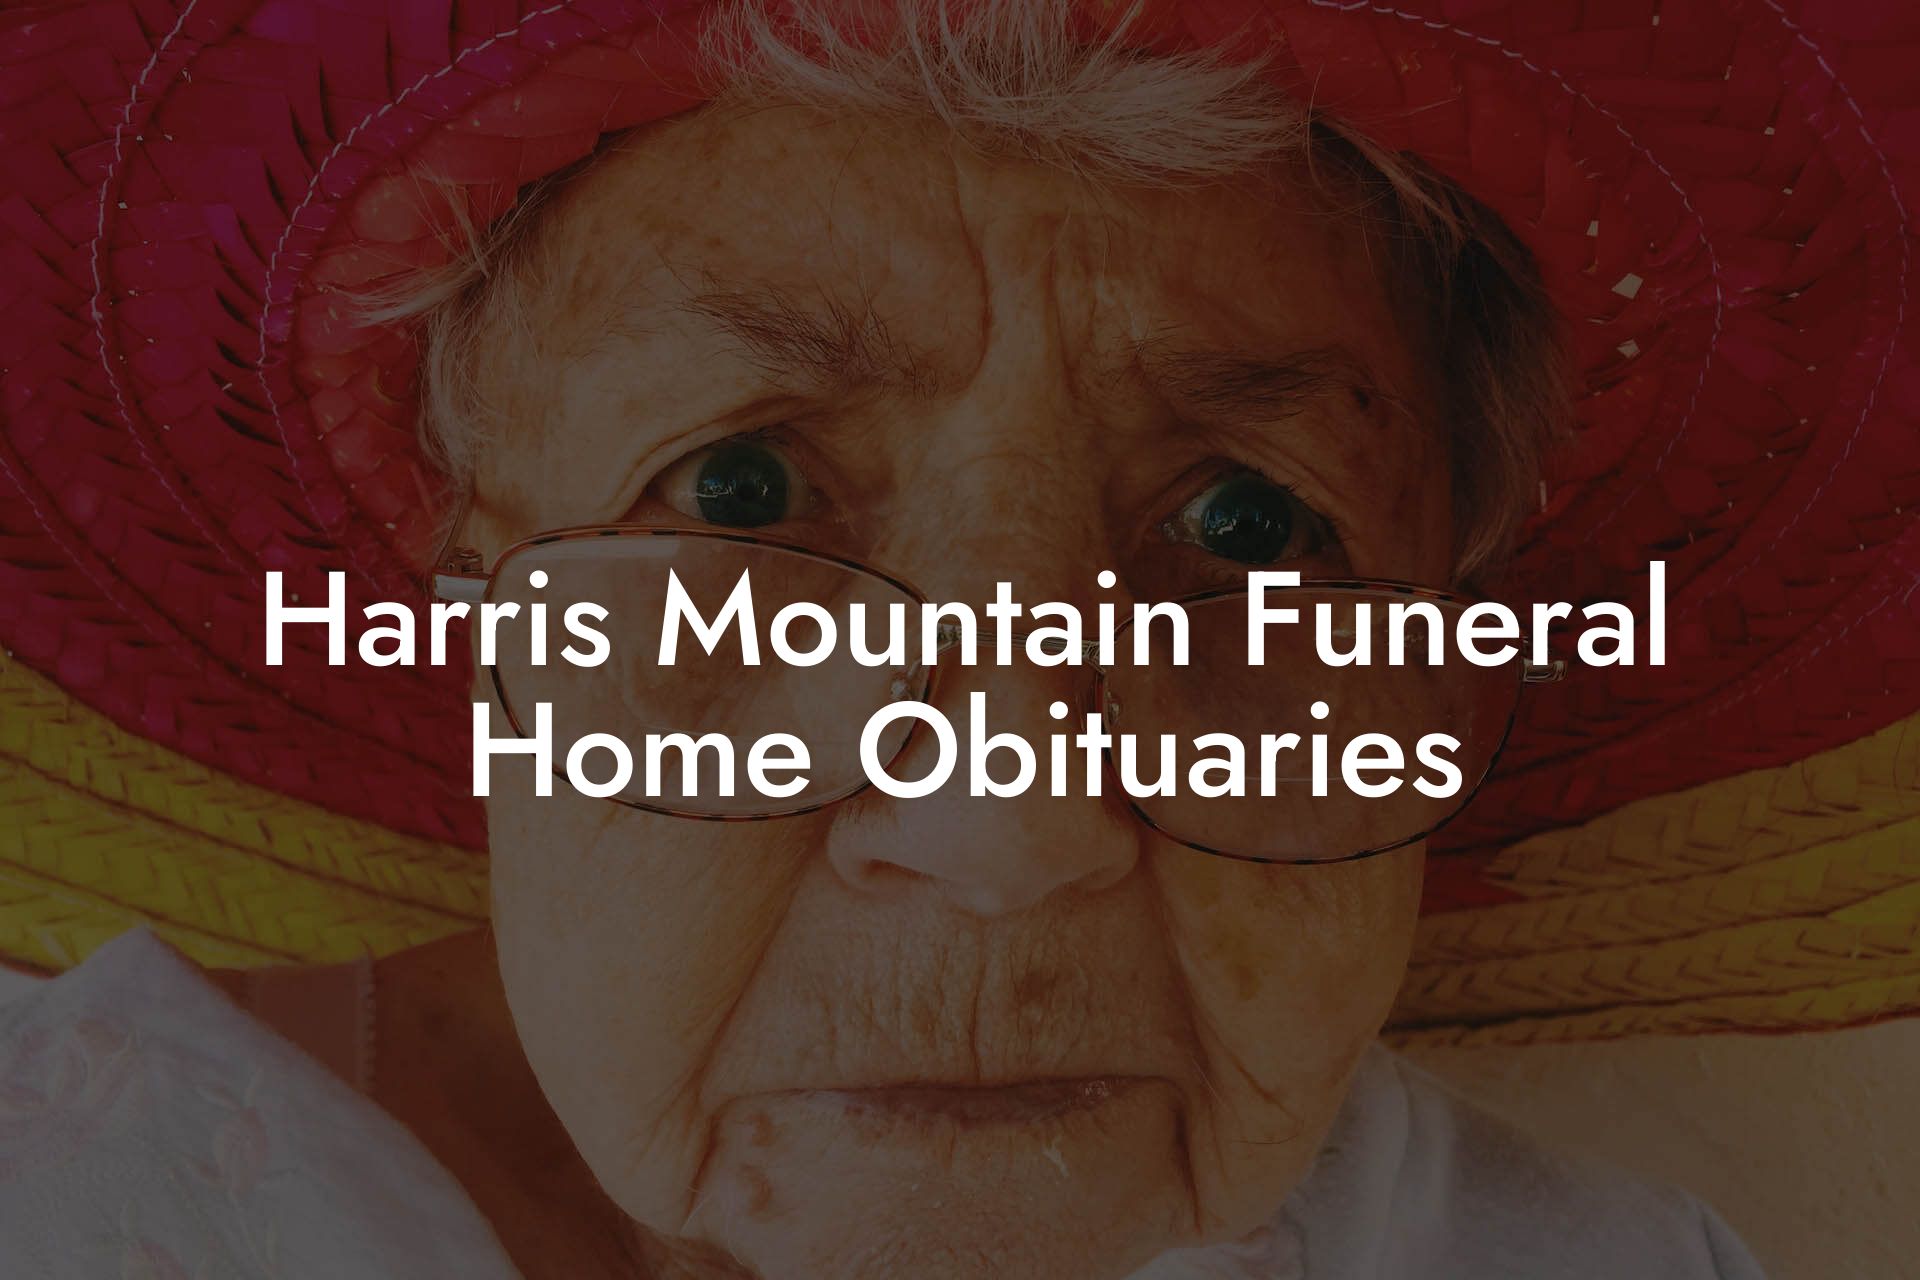 Harris Mountain Funeral Home Obituaries